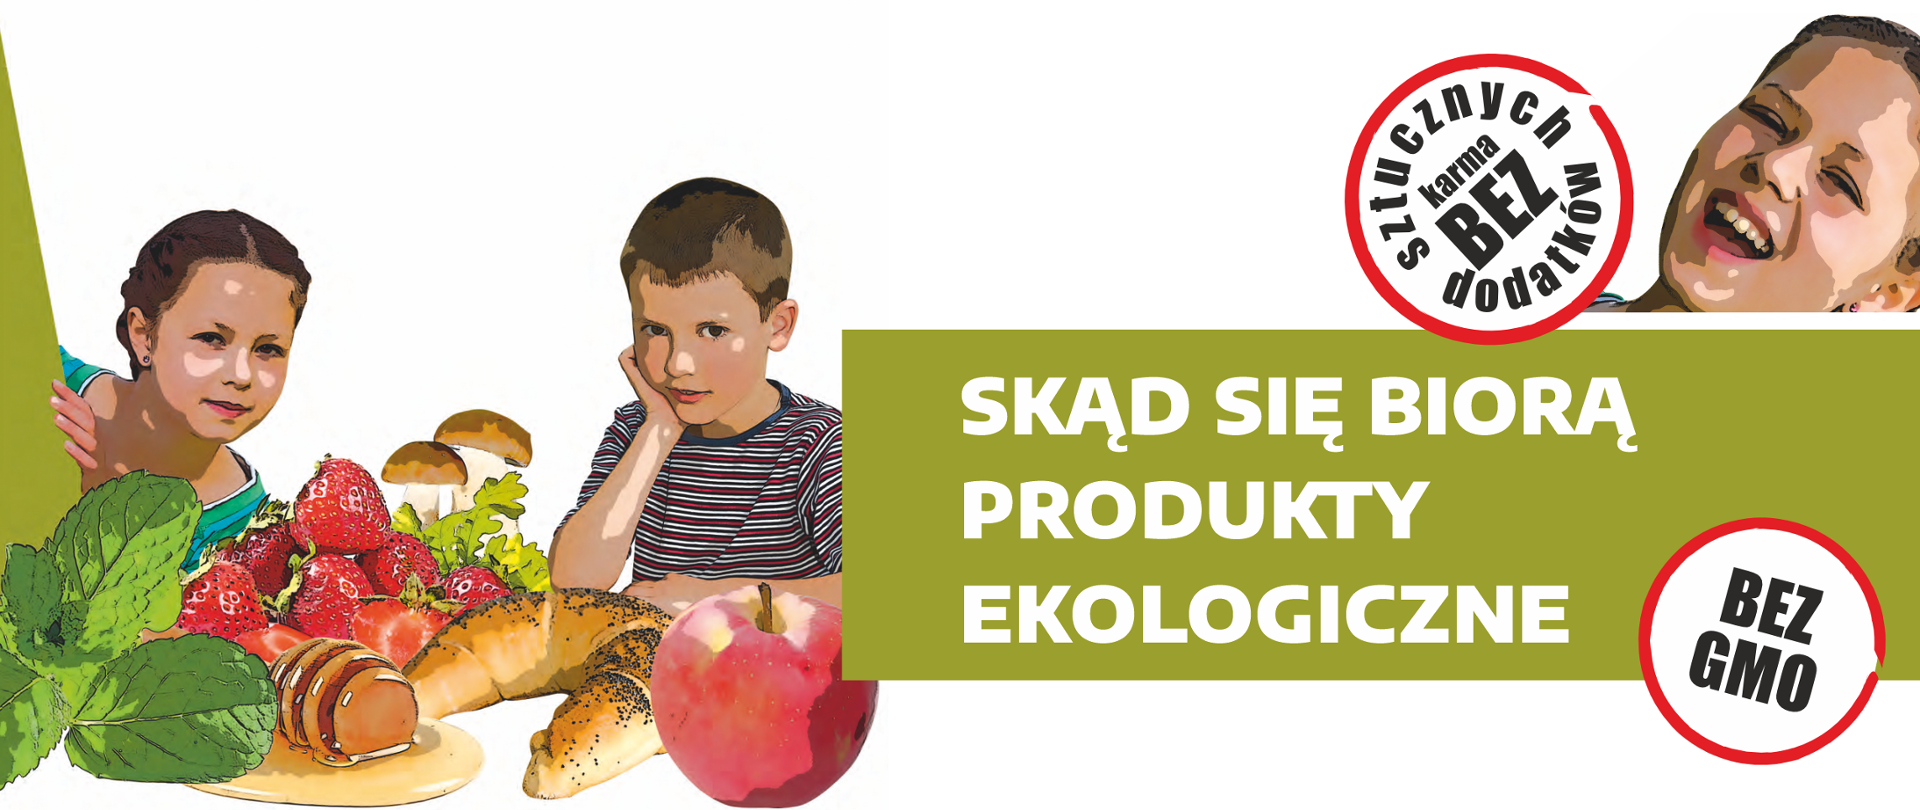 baner z napisem Skąd się biorą produkty ekologiczne, z lewej strony chłopiec i dziewczynka oraz przykładowe produkty spożywcze